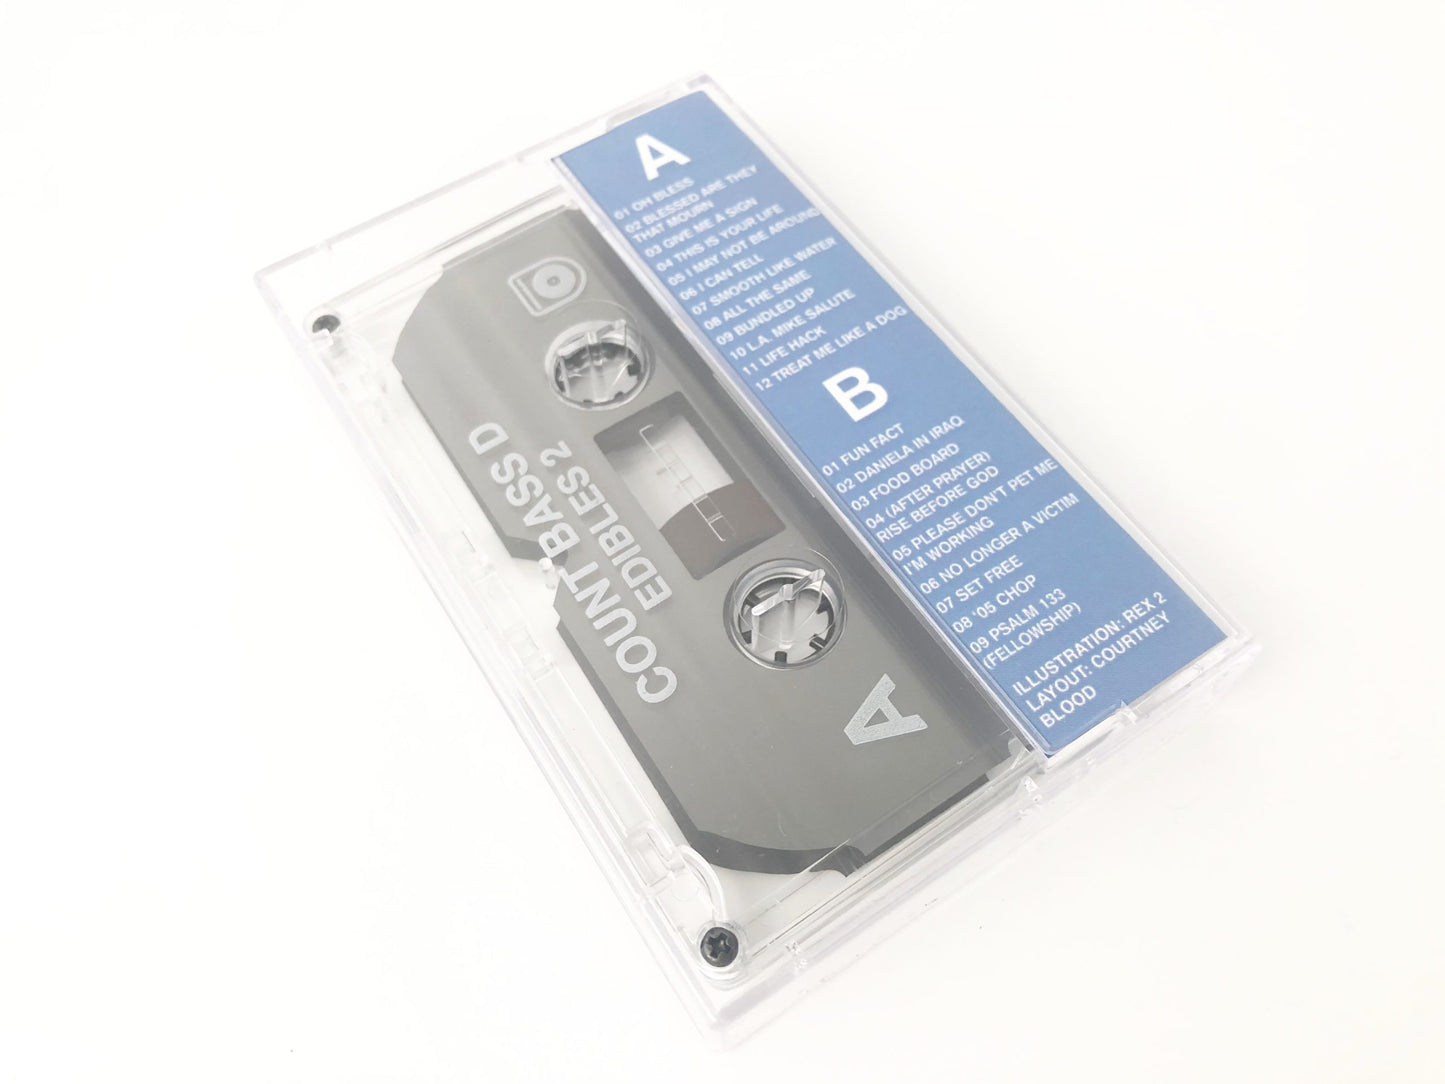 Edibles 2 Cassette – Count Bass D